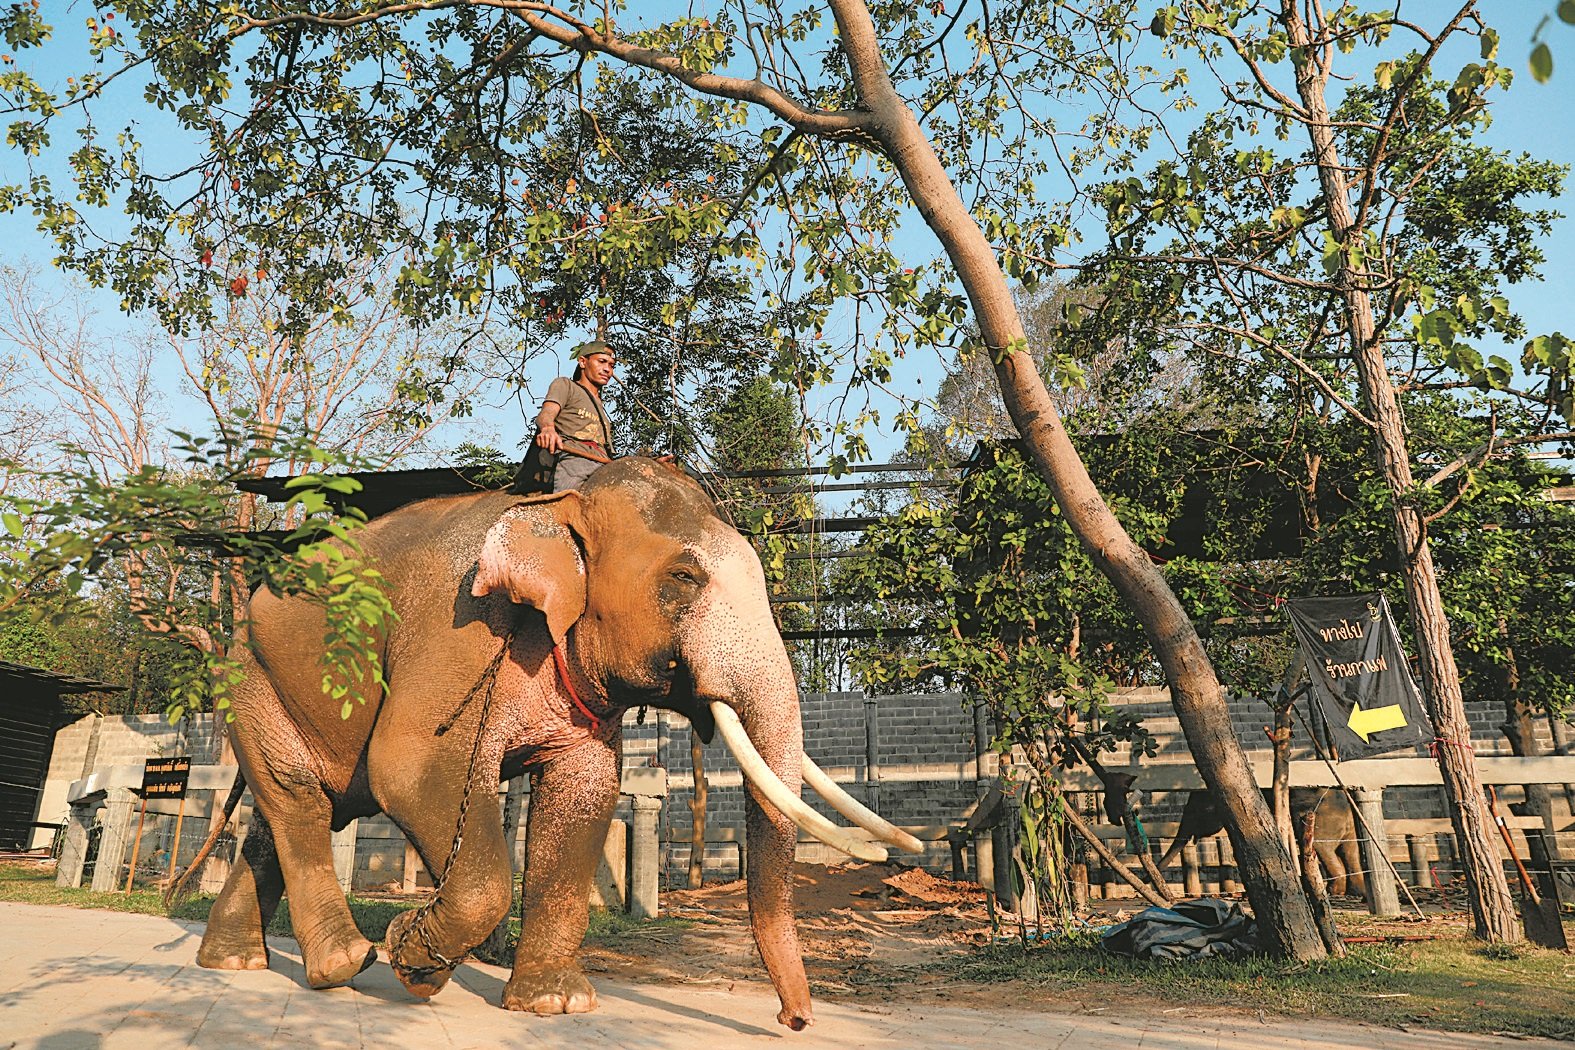 泰王哇集拉隆功将在周末举行加冕大典，准备工作进入最后阶段。这是一头名为艾柯柴的白象，将在大典中赠给泰王。管理员细心照顾，确保它保持最佳状态。白象在泰国被视为是王室的标志。